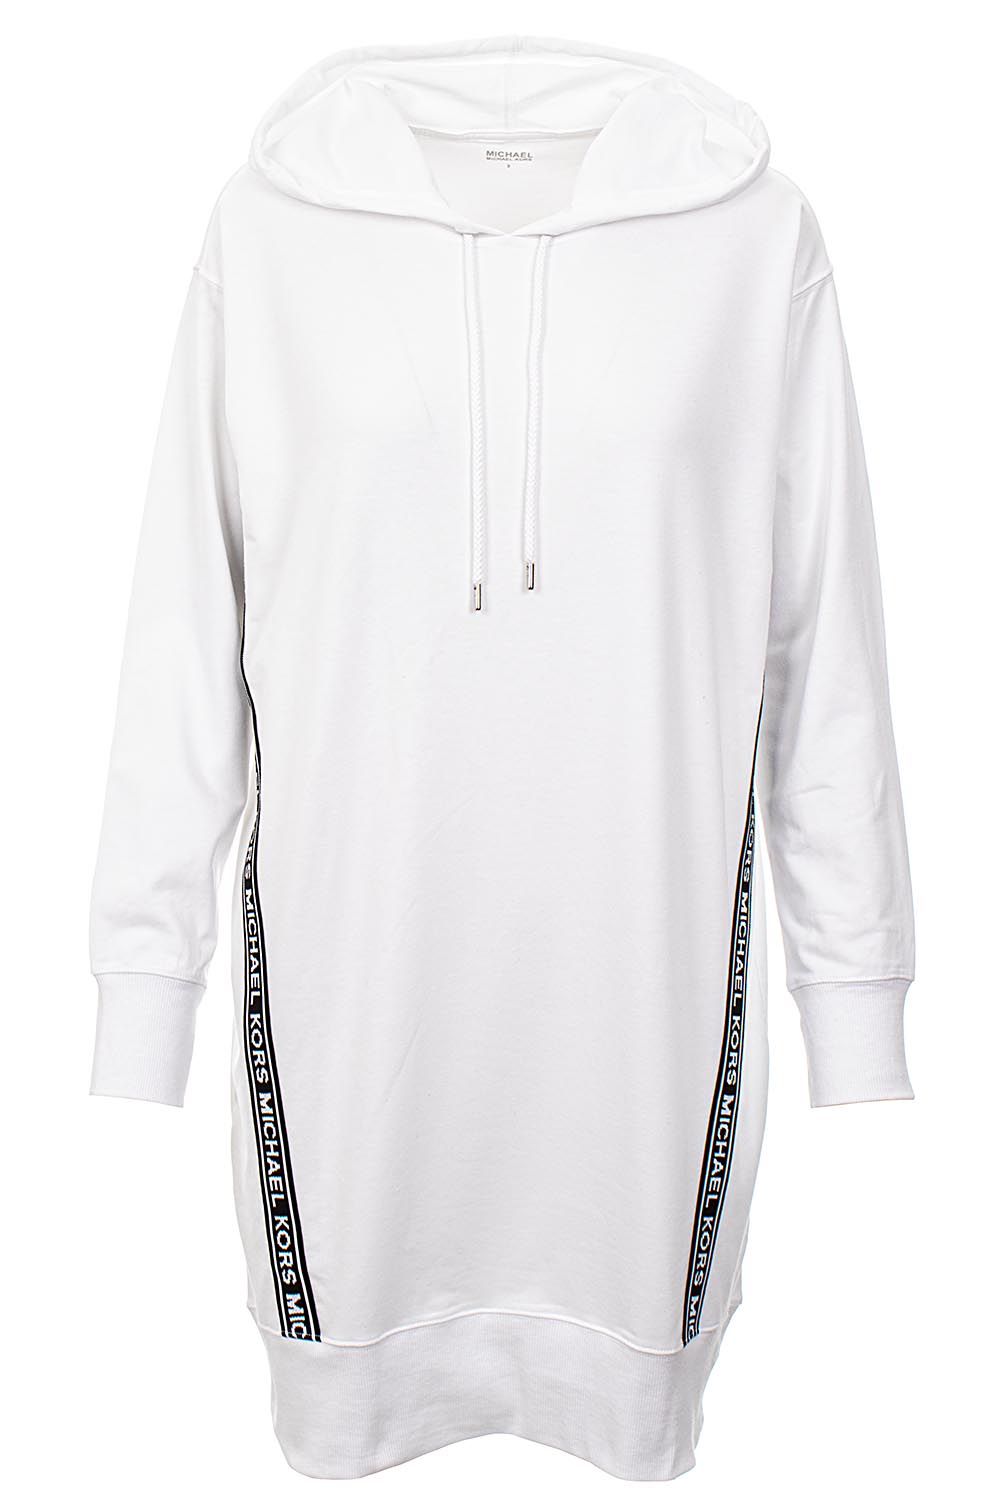 Michael Kors Dámské mikinové šaty s pruhy bílé Velikost: S